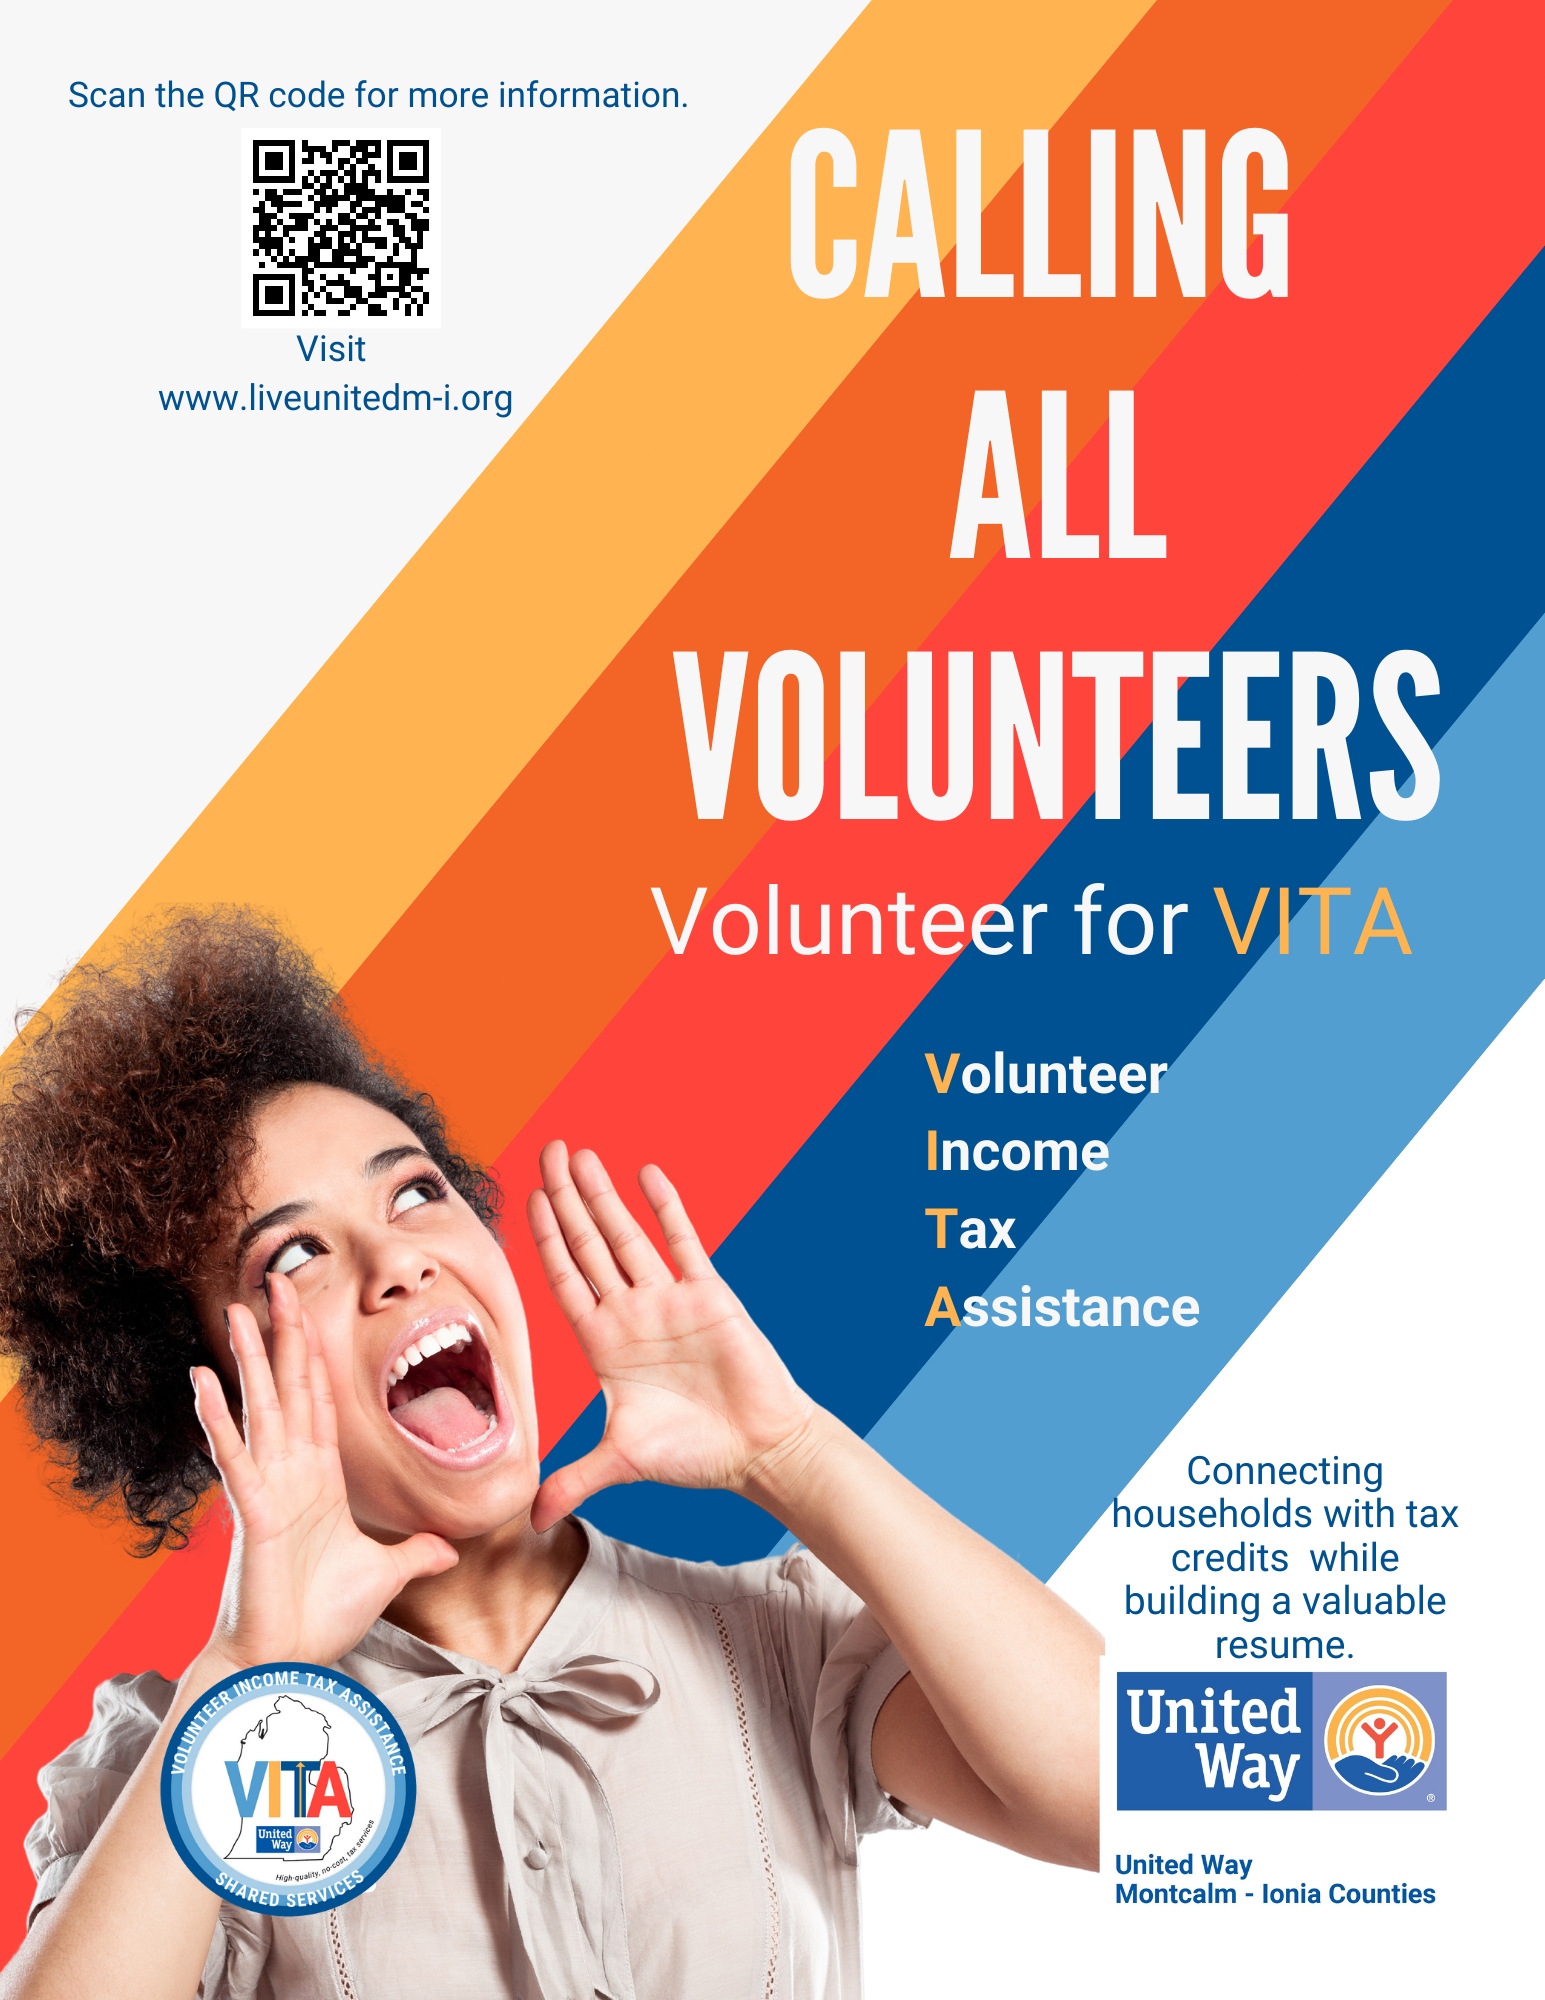 Calling all volunteers